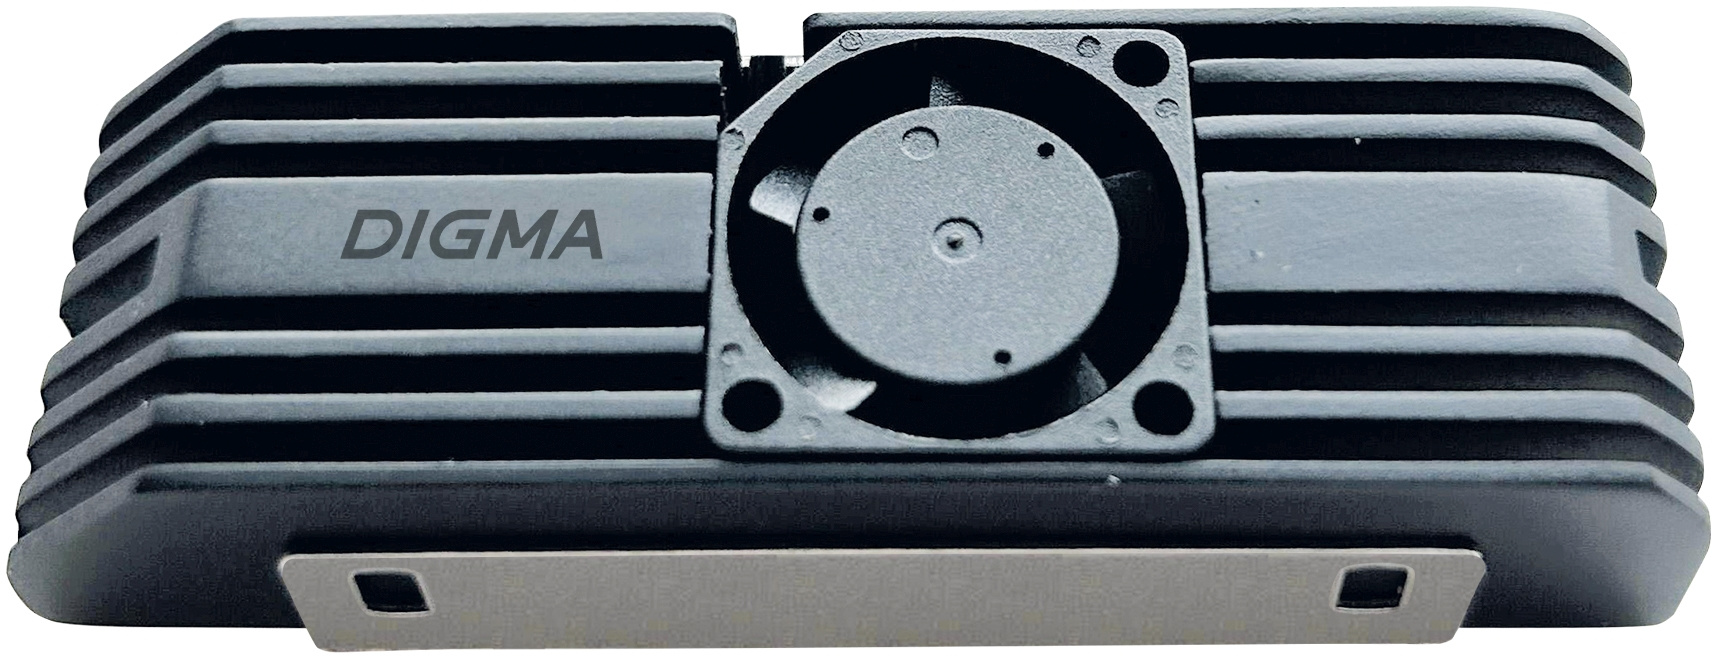 Радиатор для SSD M.2 2280 Digma DGRDRM2C, алюминий, черный (DGRDRM2C)